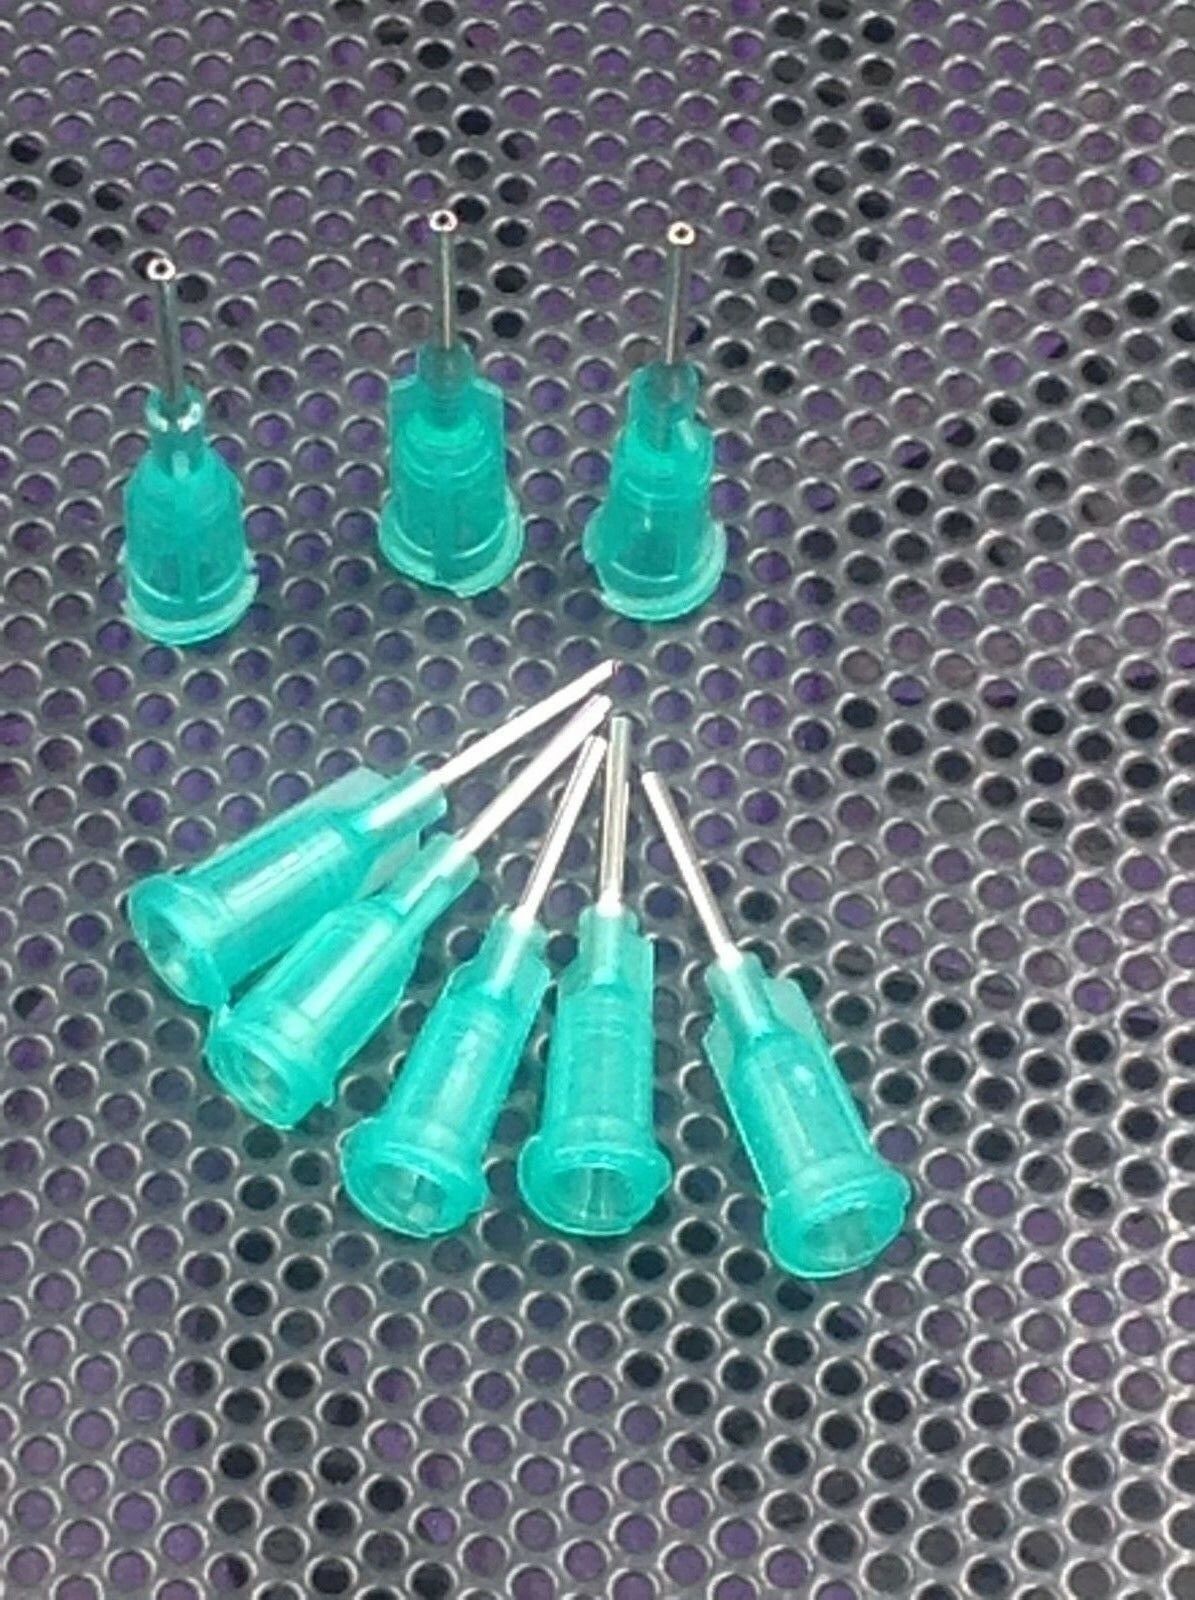 50pcs 1/2" 18Ga Dispensing Needle Tip For Liquid Dispenser Adhesive Glue 0.5"